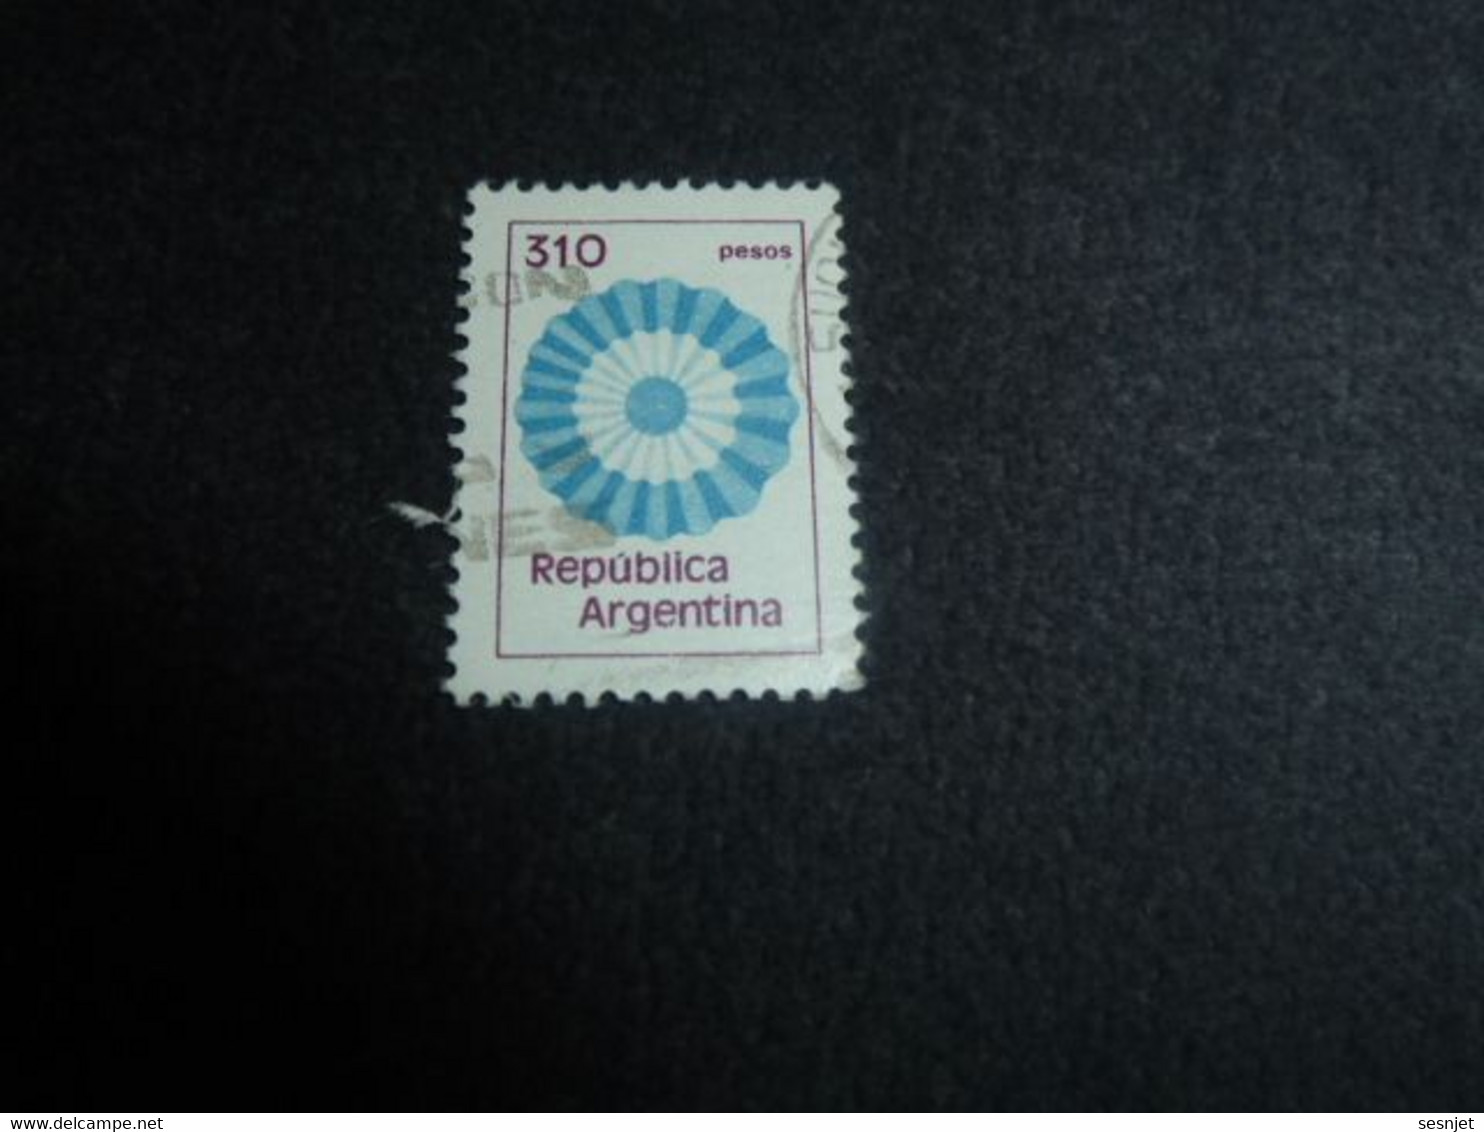 Republica Argentina - Rosace - 310 Pesos - Yt 1280 - 1288 - Multicolore - Oblitéré - Année 1981 - - Usati